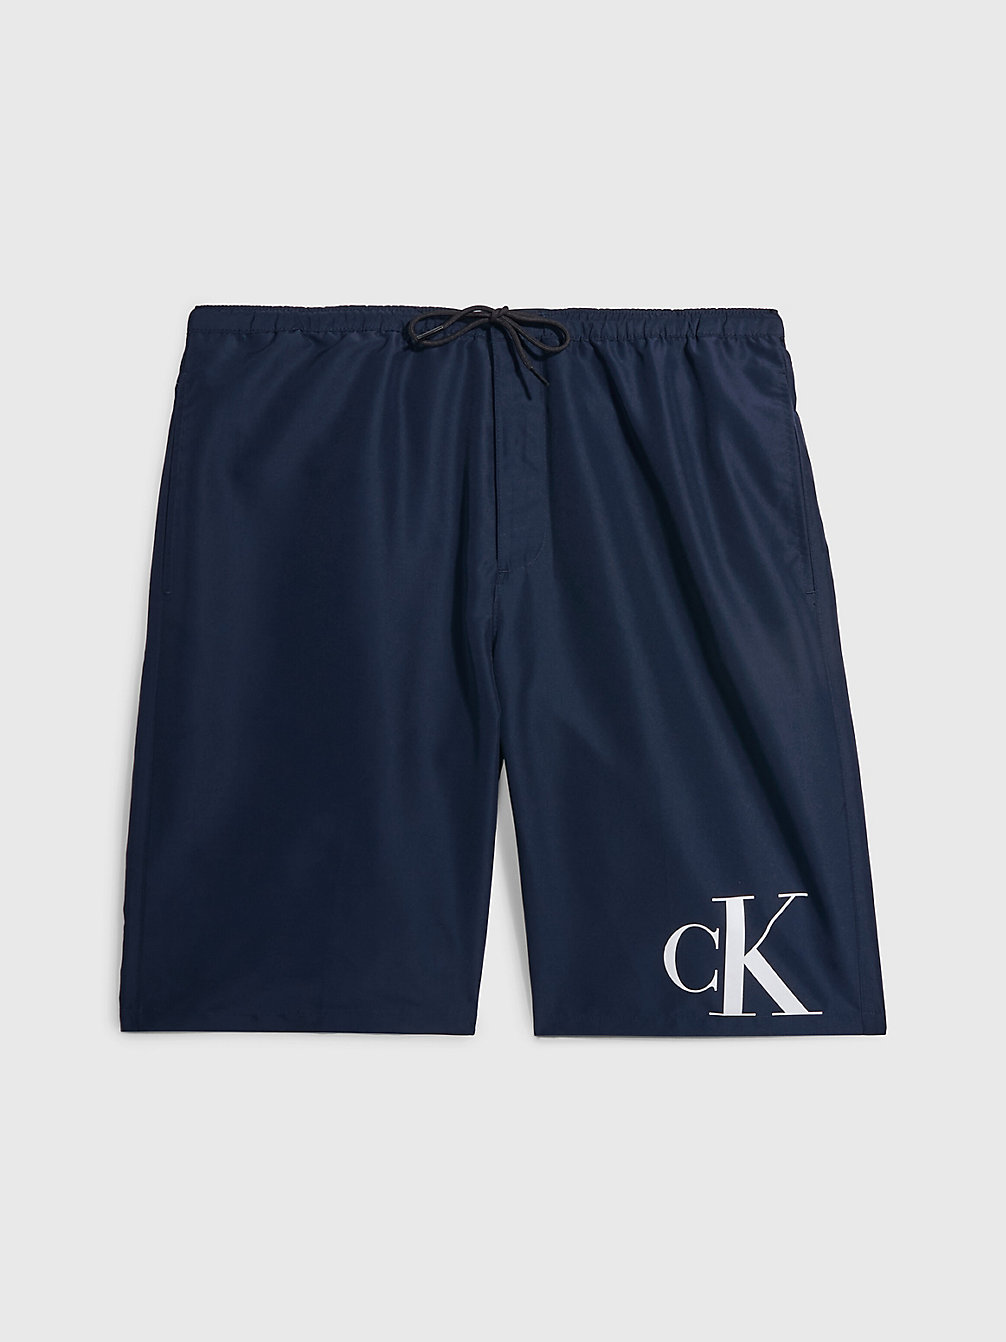 NAVY IRIS Board Shorts - CK Monogram undefined men Calvin Klein